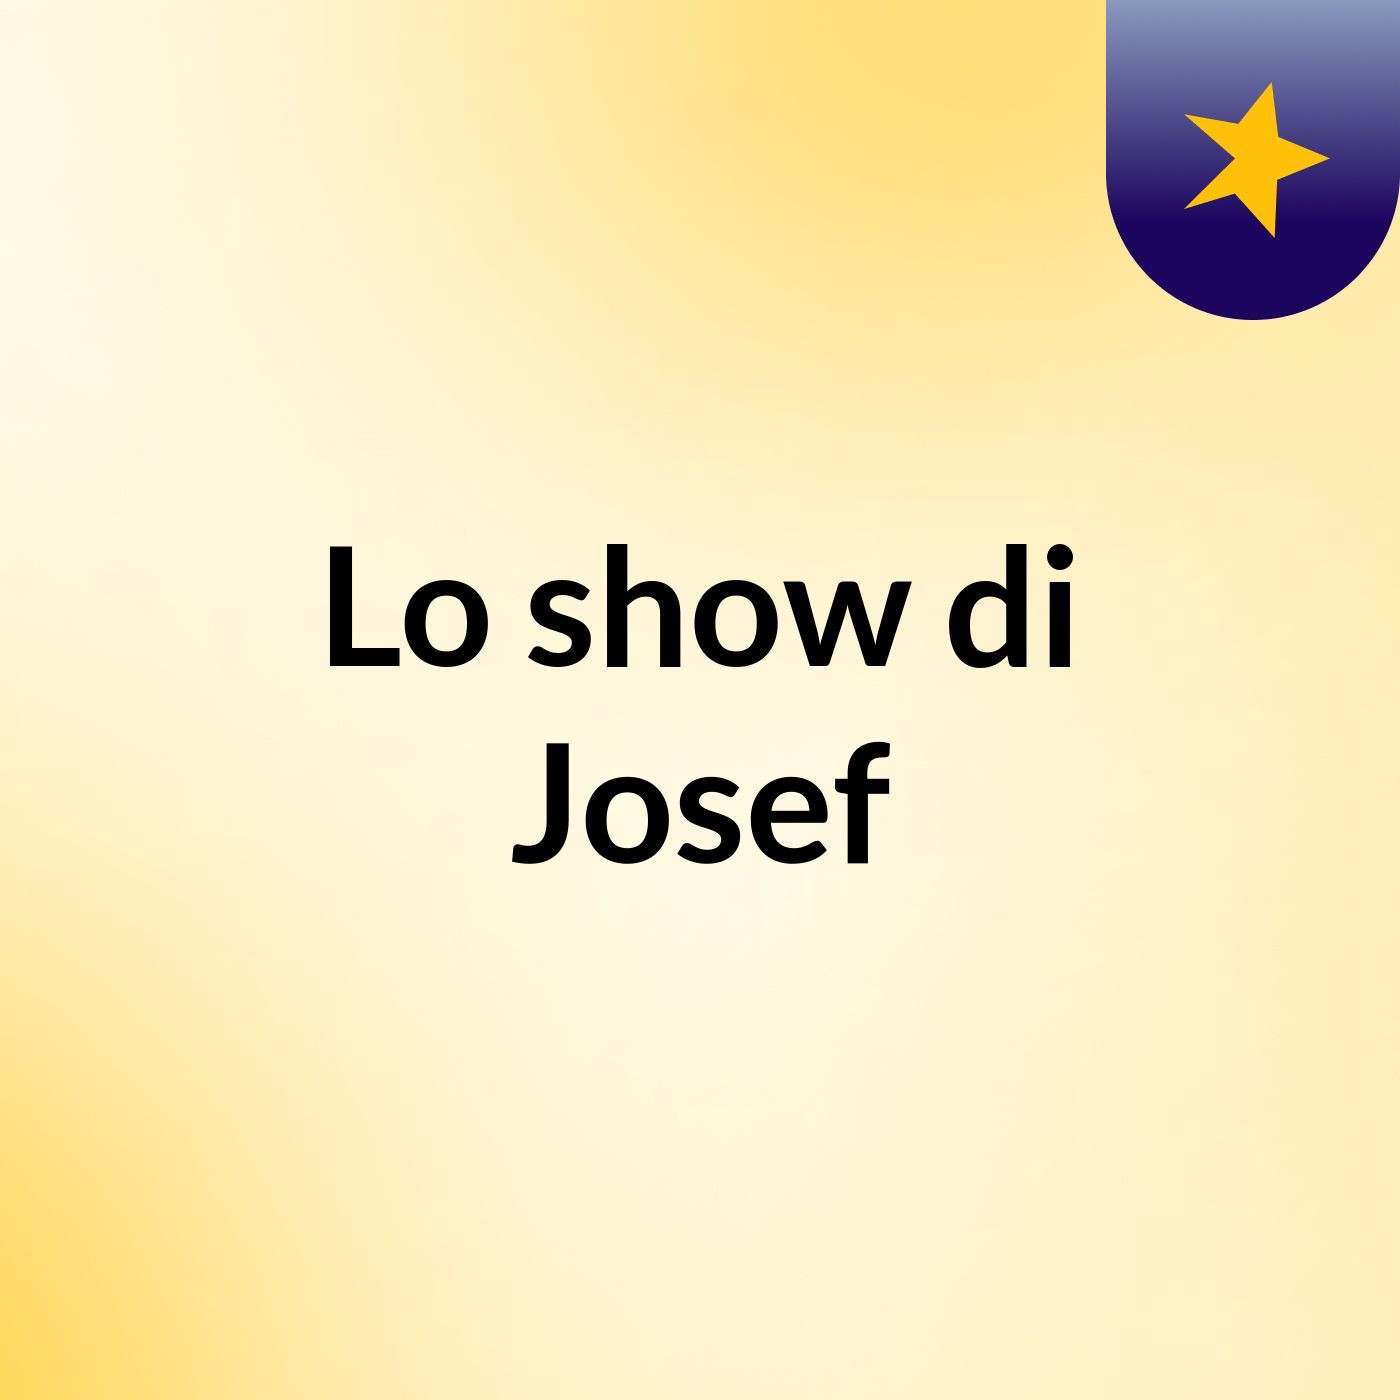 Lo show di Josef